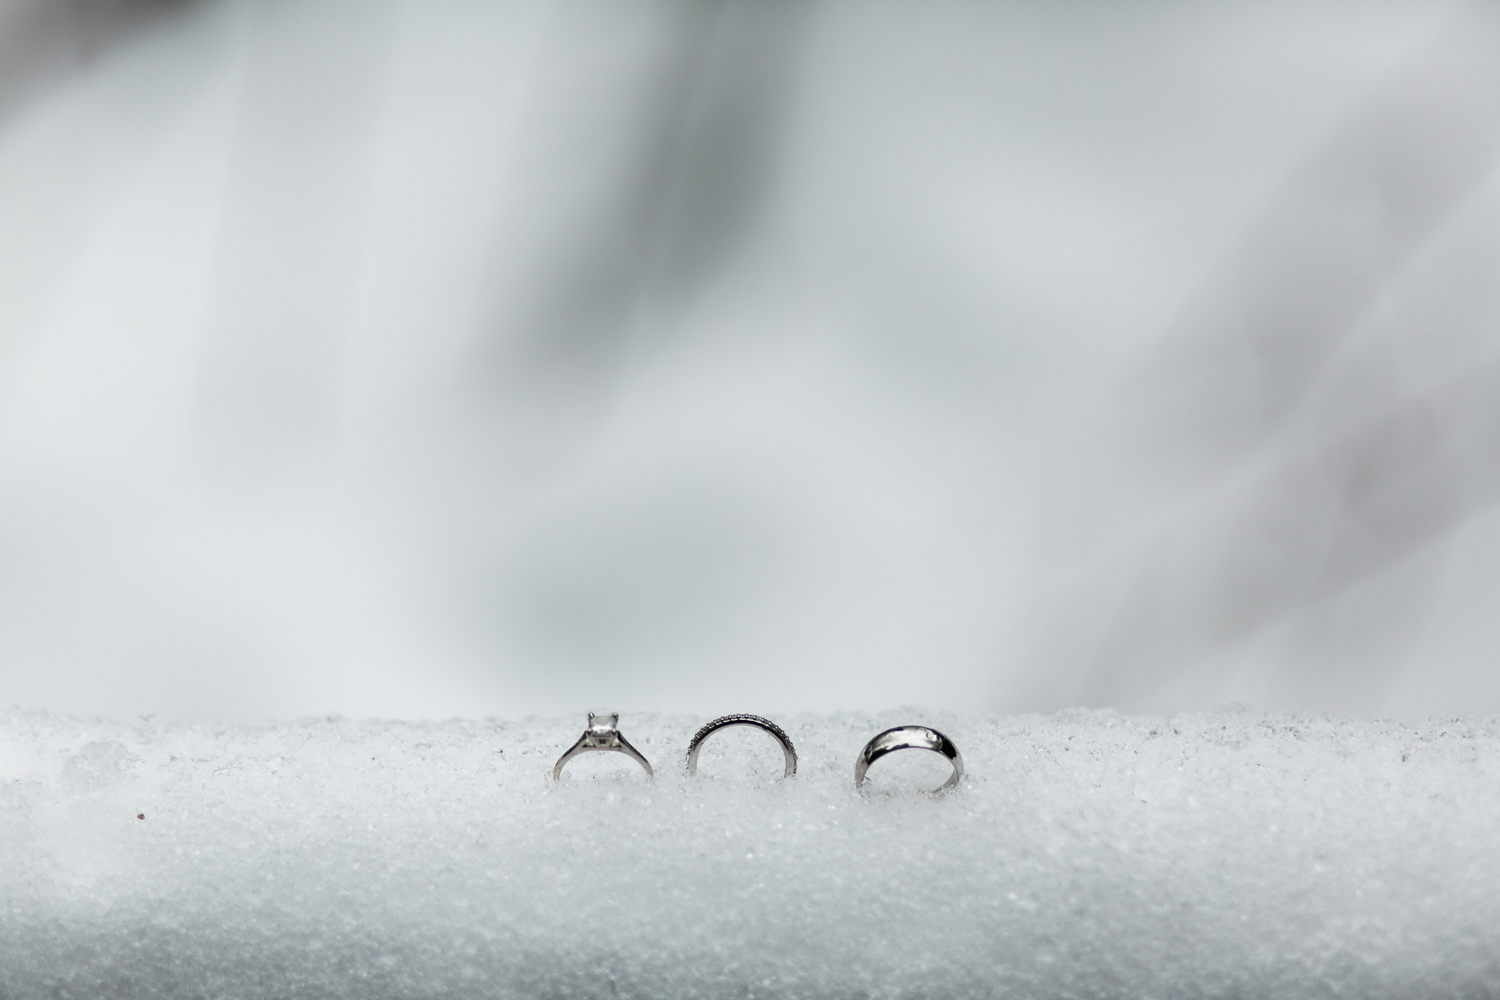 Leavenworth Winter Wedding Rings in the Snow.jpg